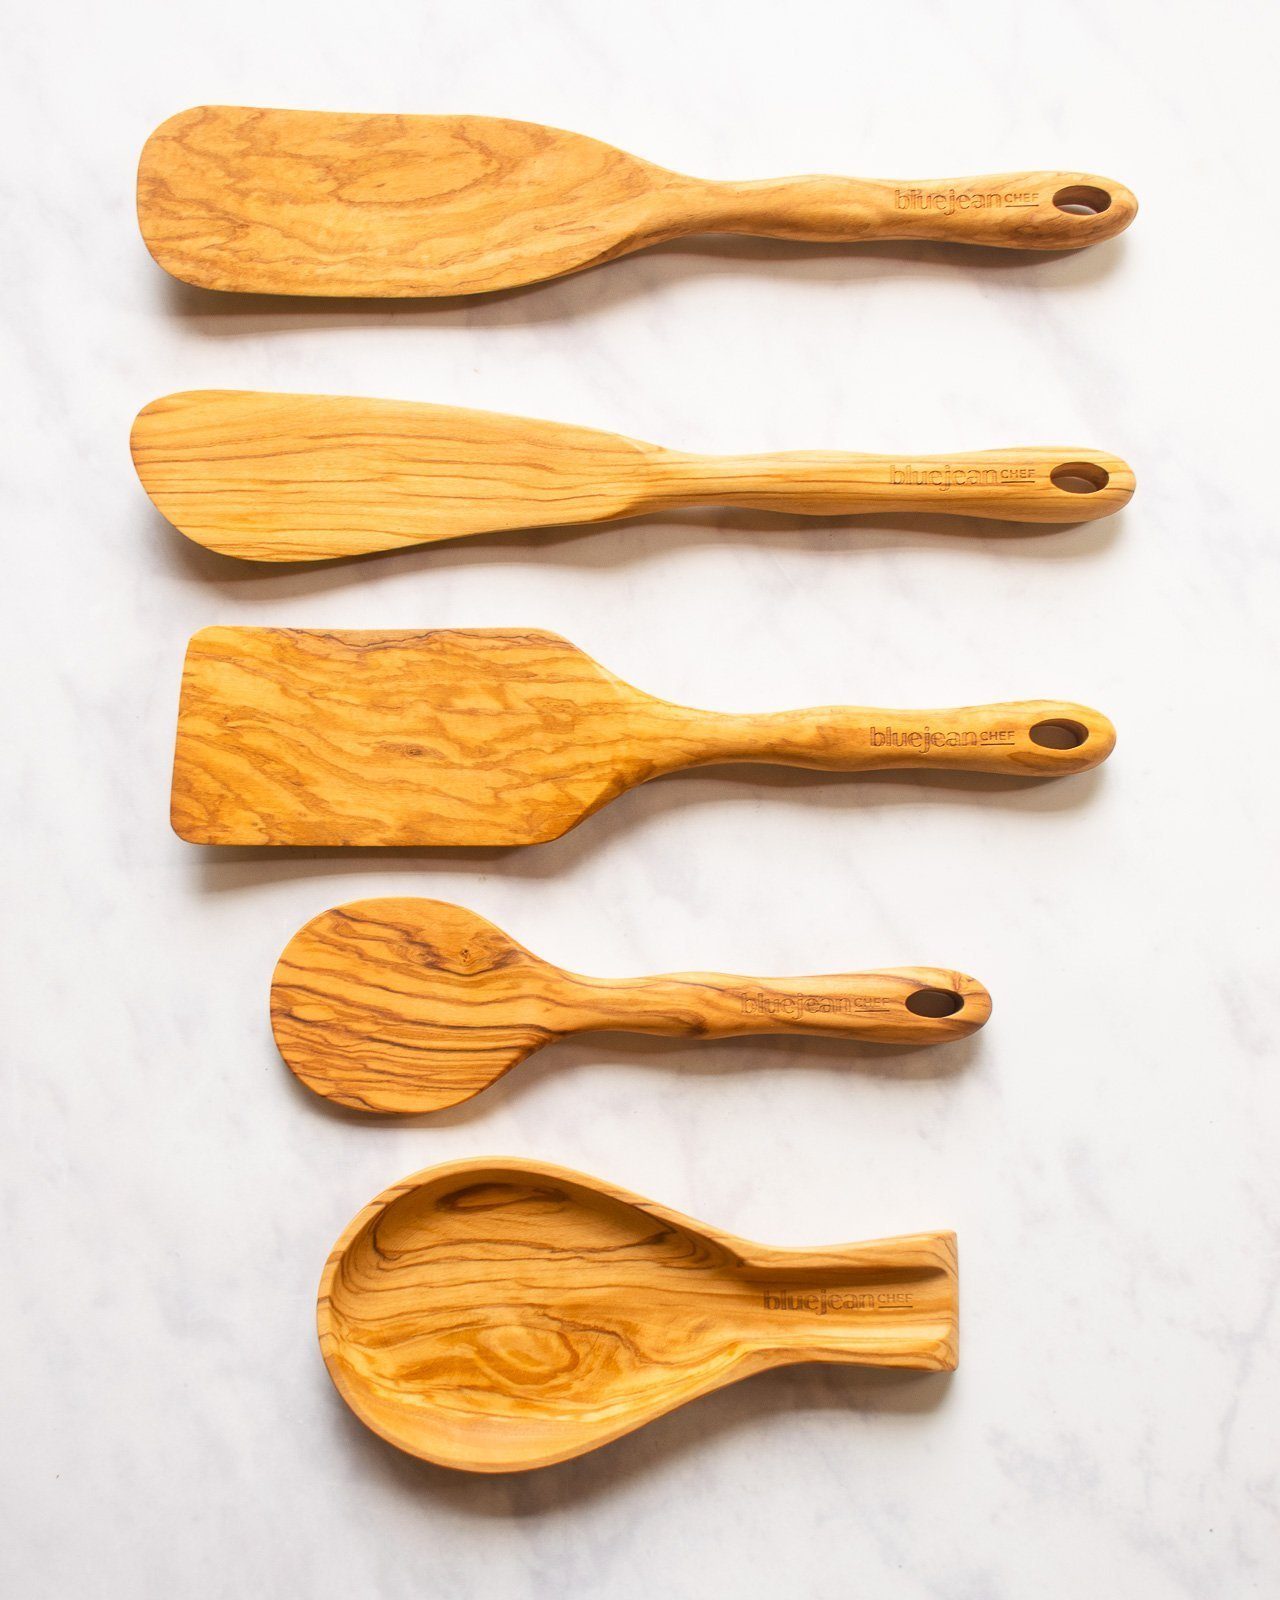 5 Piece Wooden Kitchen Utensils Set - Sustainability Meets Versatility